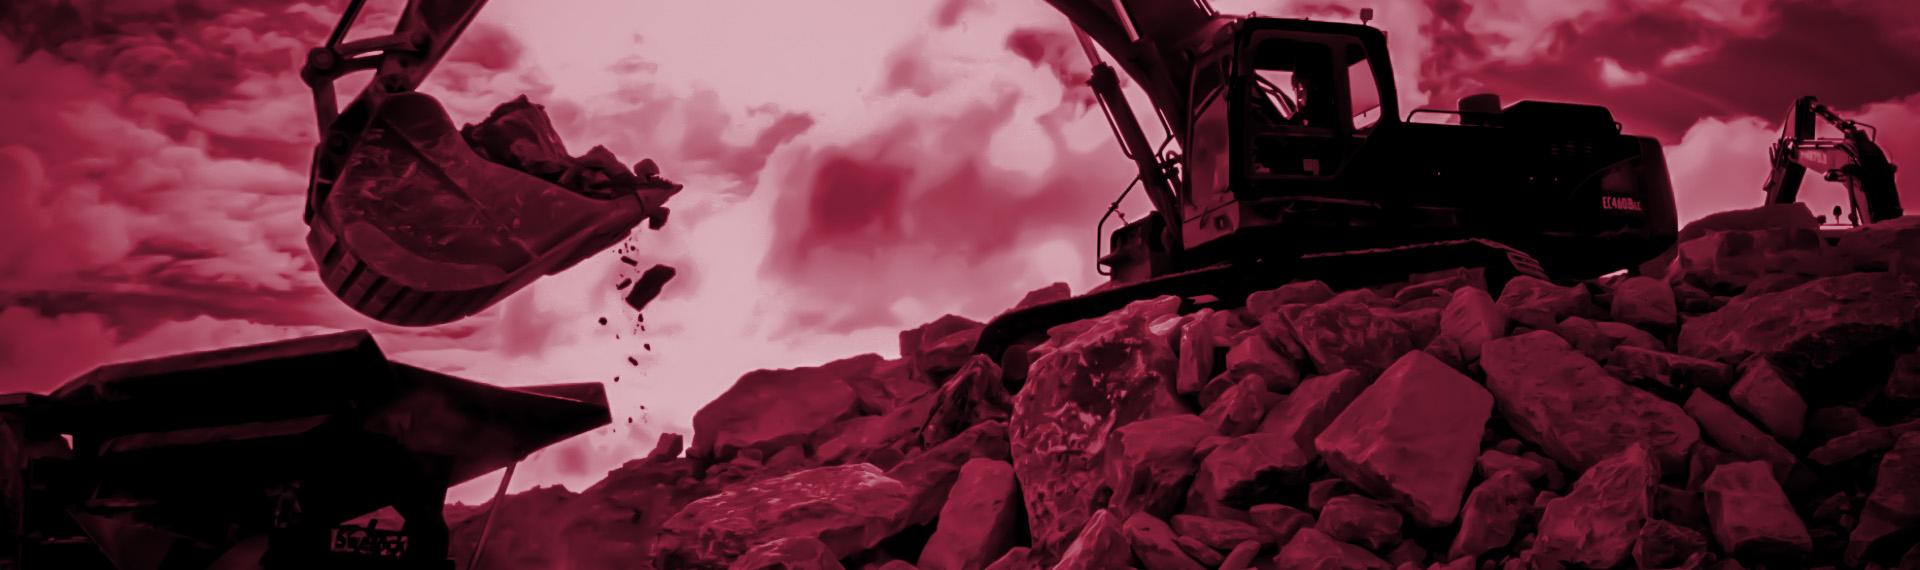 Oțelul Hardox 450 lucrează din greu într-o cupă de excavator care excavează roci abrazive.